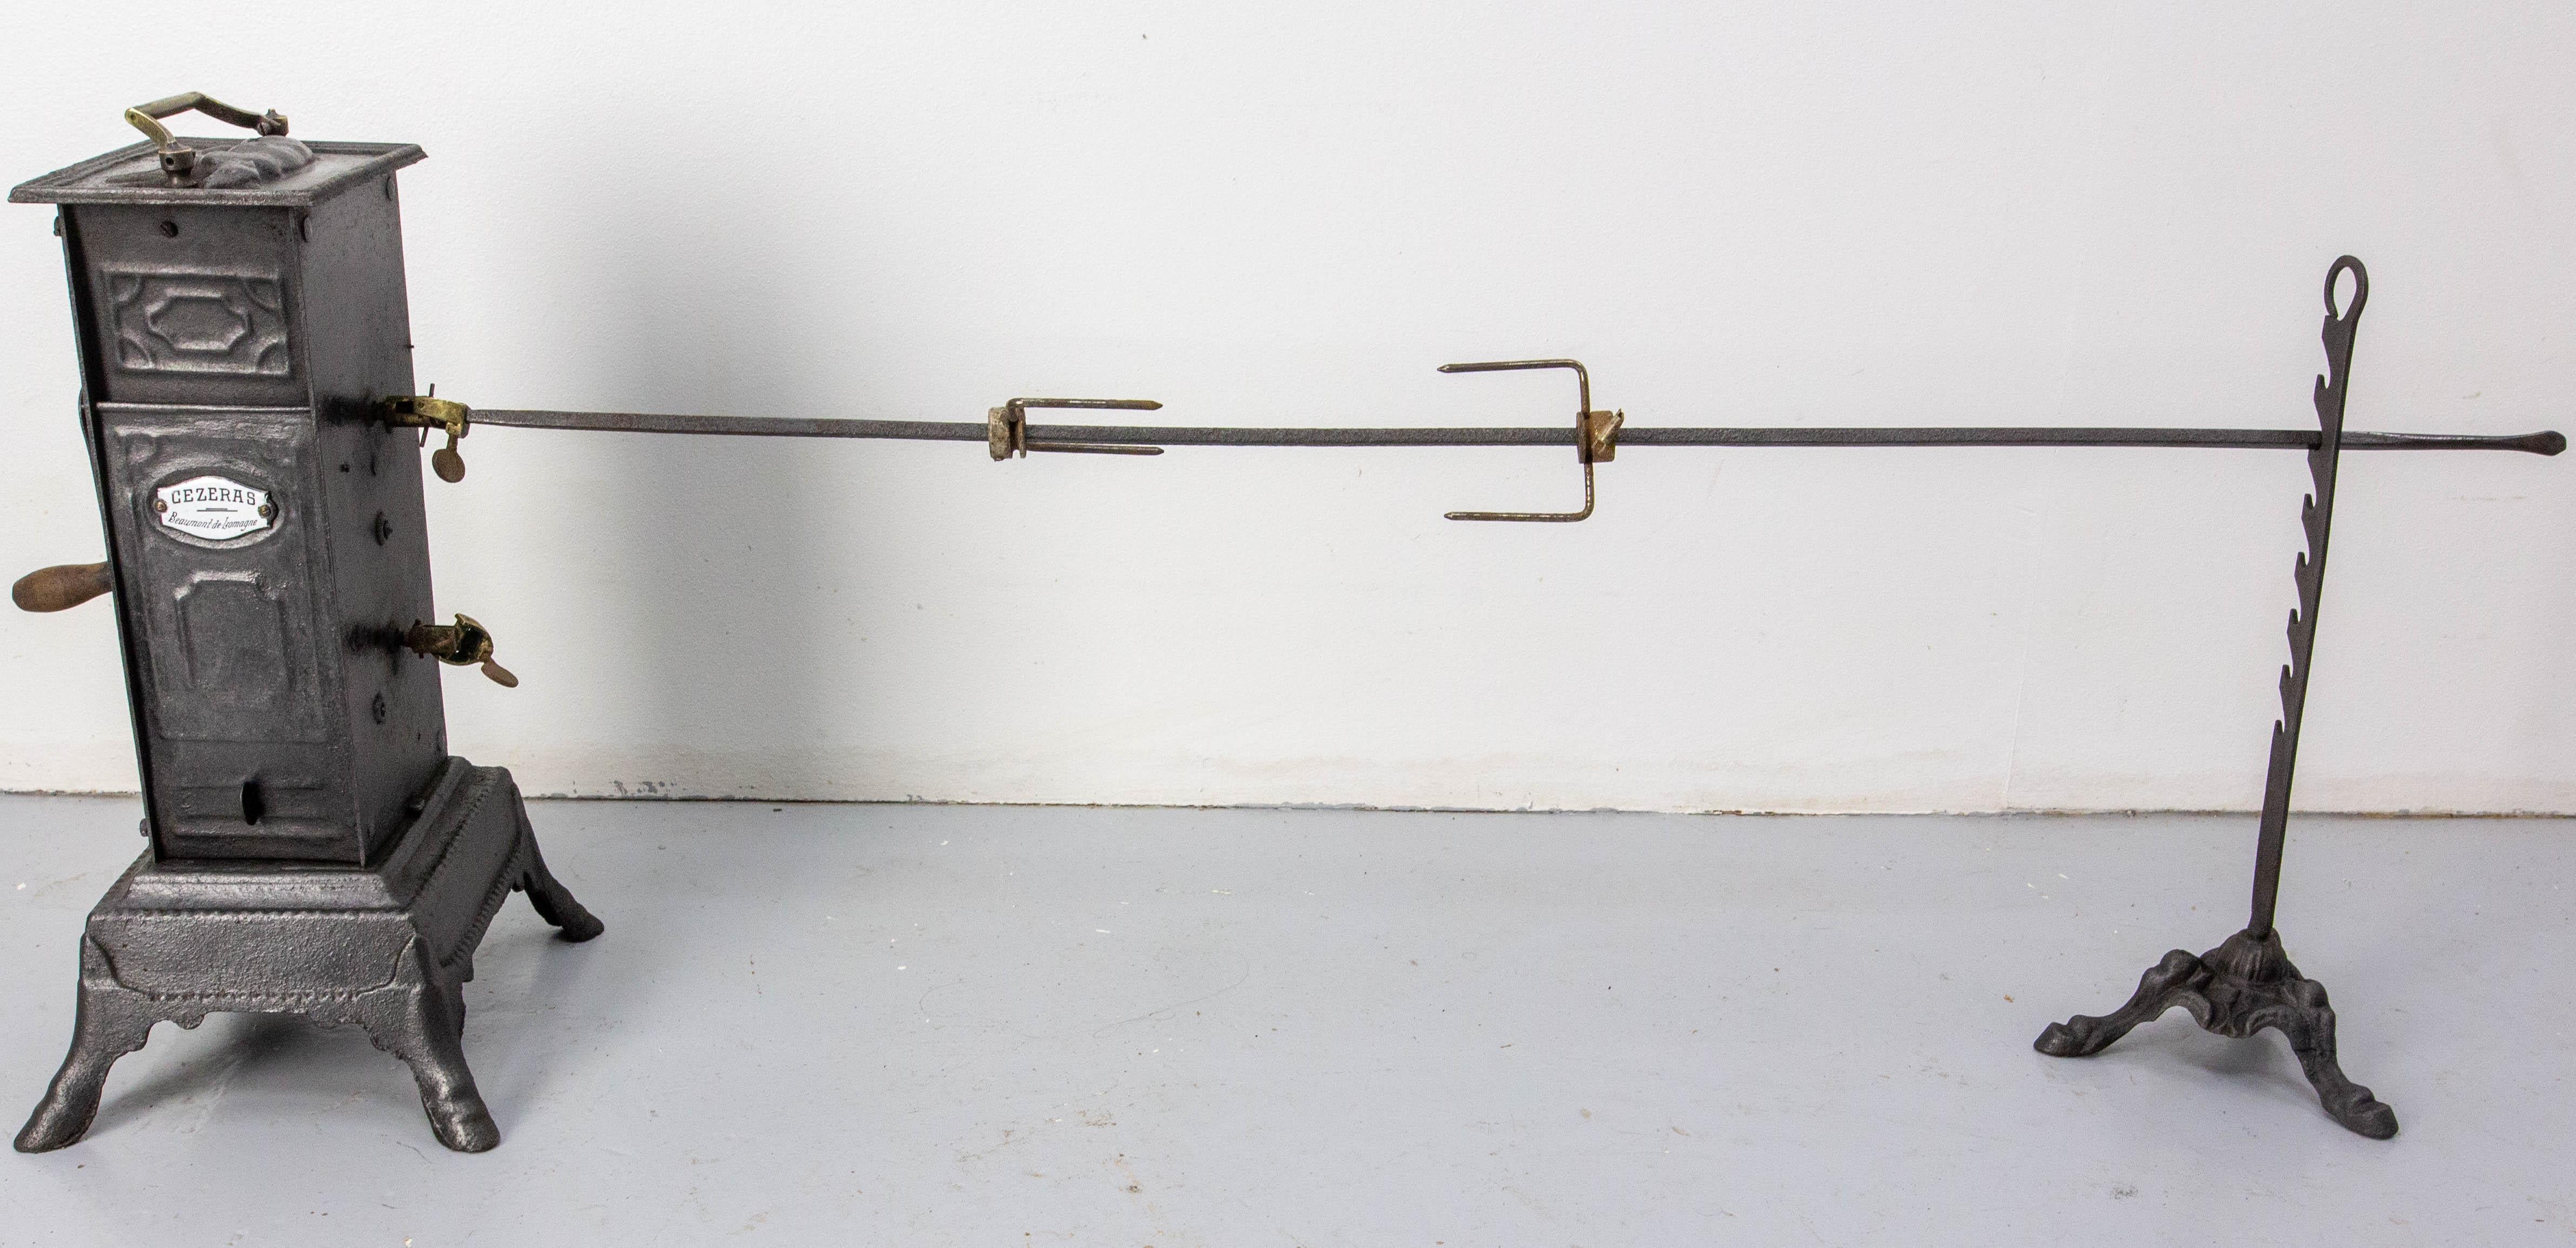 Rôtissoire en fonte française du XIXe siècle, ornée et fonctionnelle.
Il se compose d'un vérin reposant sur quatre pieds griffes, d'une poignée, d'une clé de remontage, de 2 positions pour la broche de la rôtissoire, d'une broche tripode en fonte